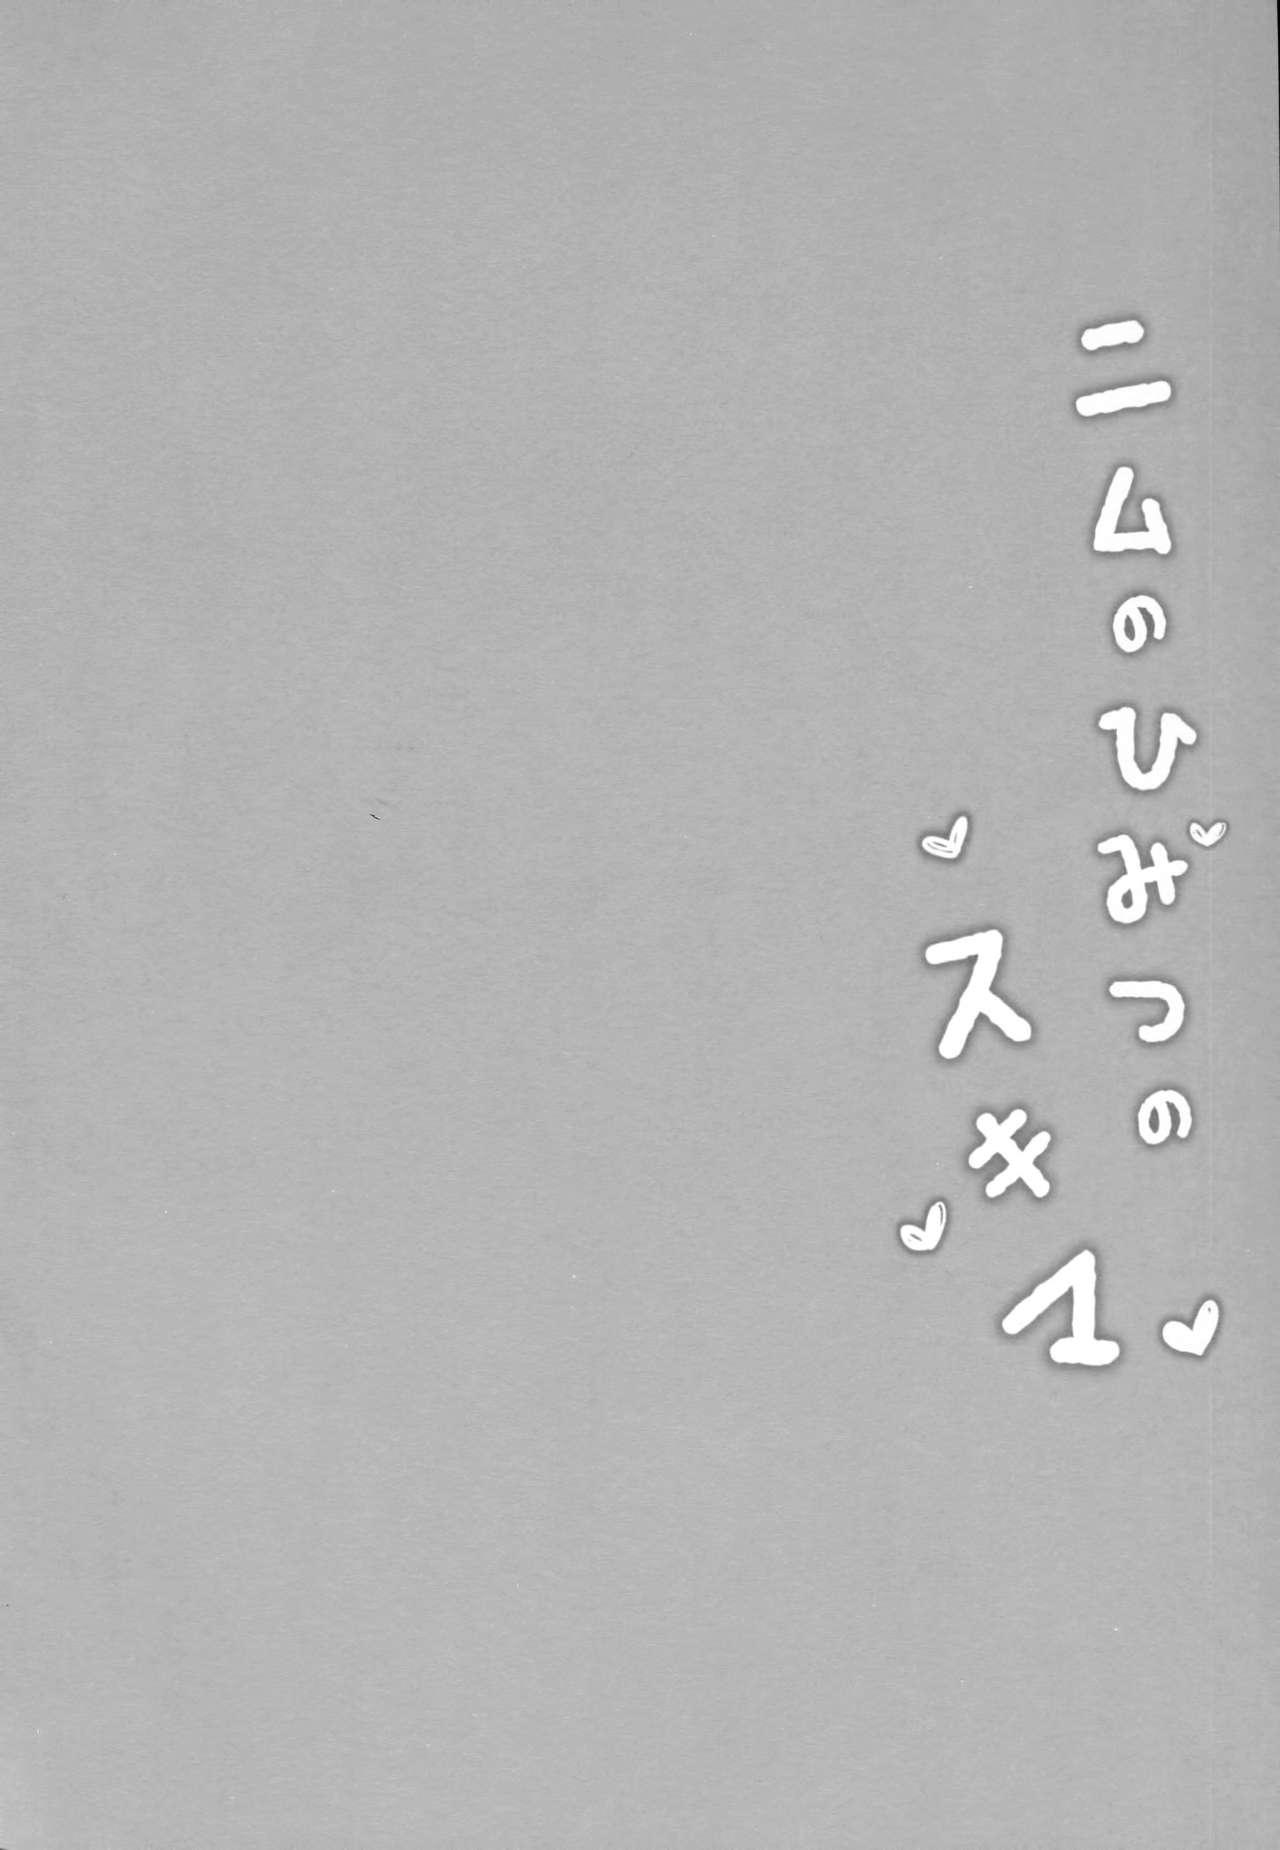 ニムのひみつのスキマ(C91) [mocha*2popcorn (きびぃもか)]  (艦隊これくしょん -艦これ-) [中国翻訳](24页)